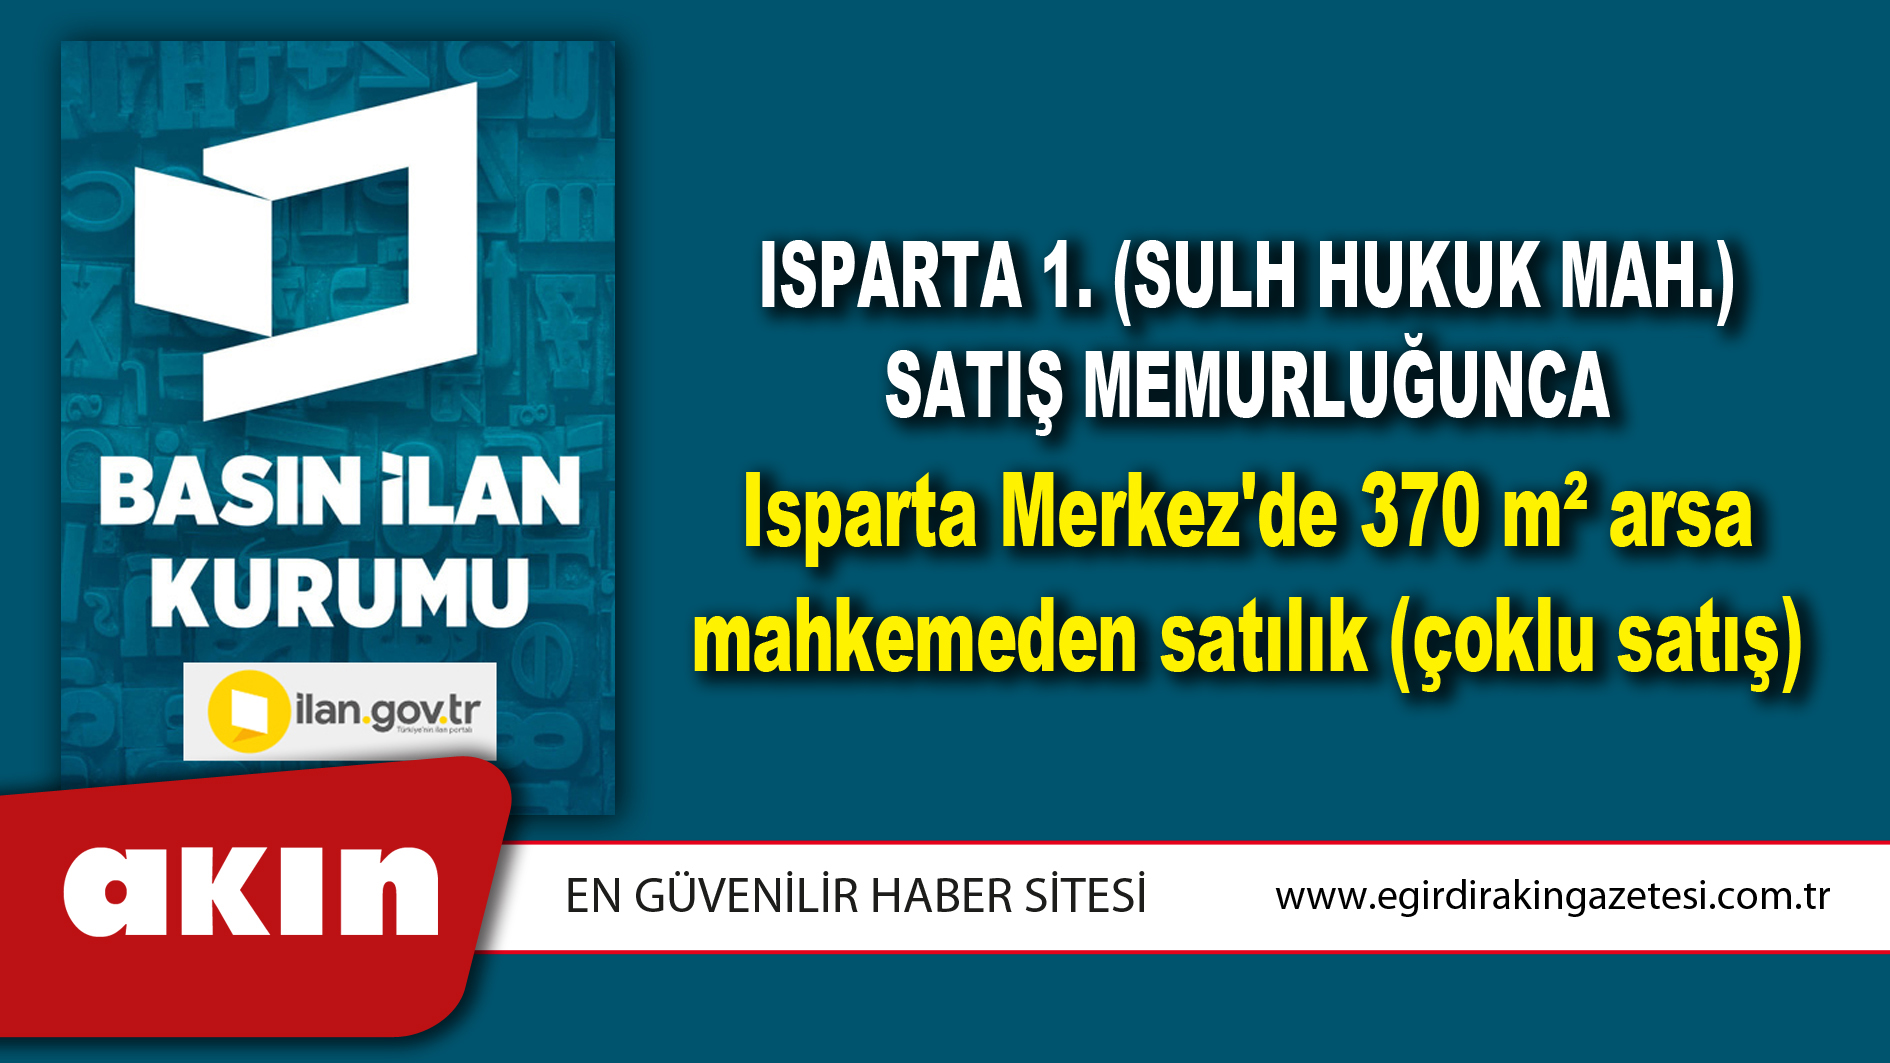 Isparta 1. (Sulh Hukuk Mah.) Satış Memurluğunca Isparta Merkez'de 370 m² arsa mahkemeden satılık (çoklu satış)